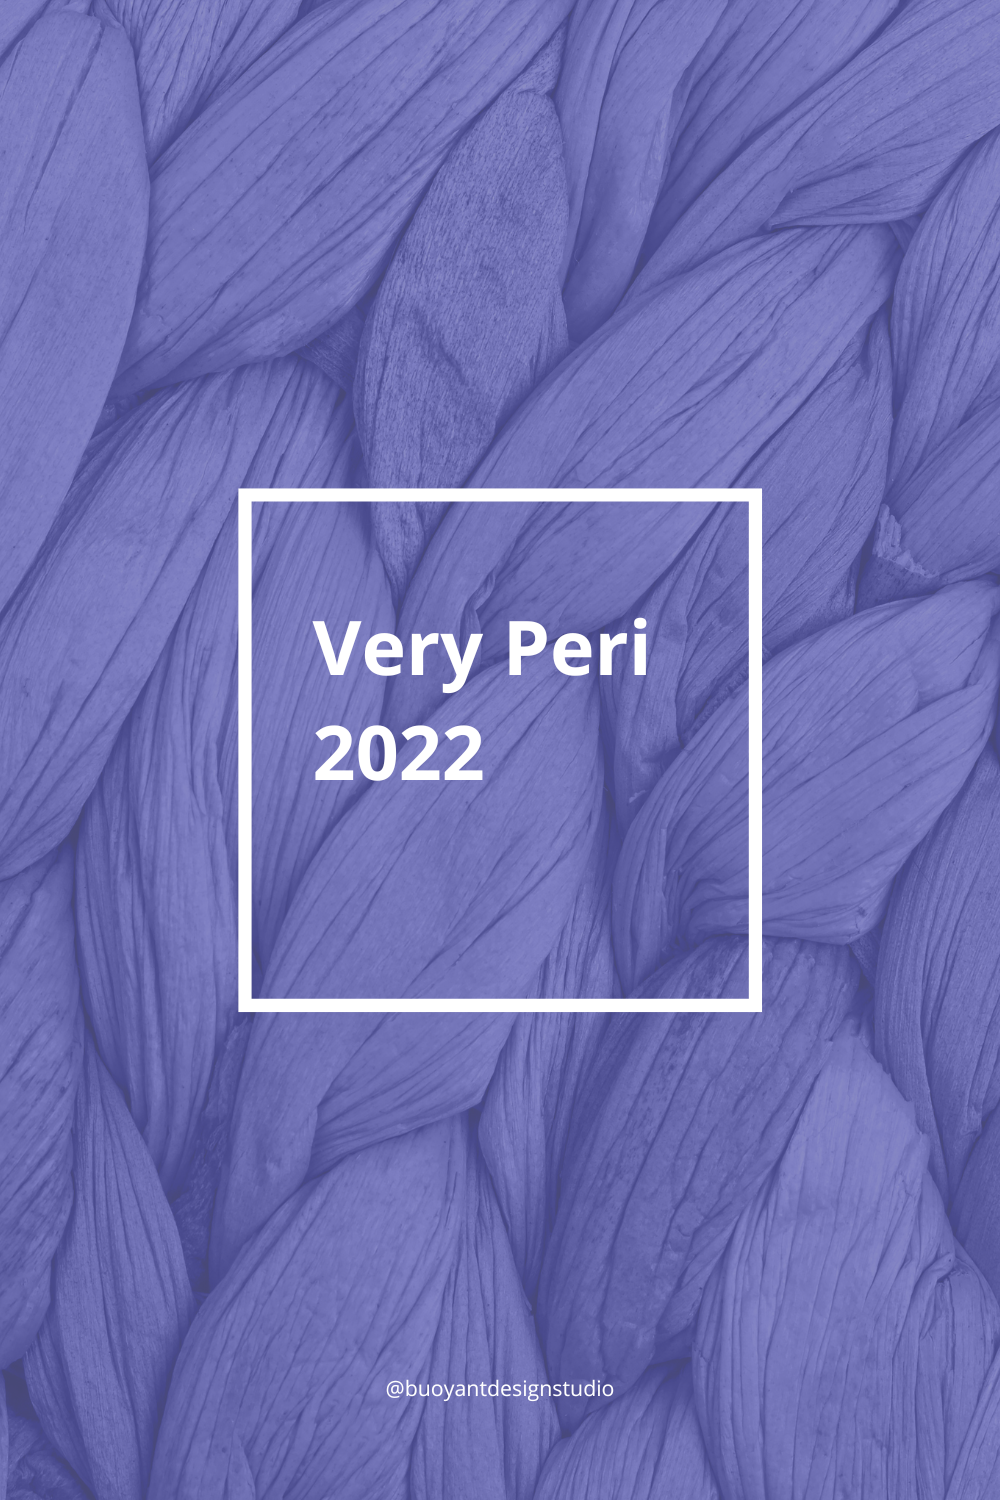 Very Peri 2022